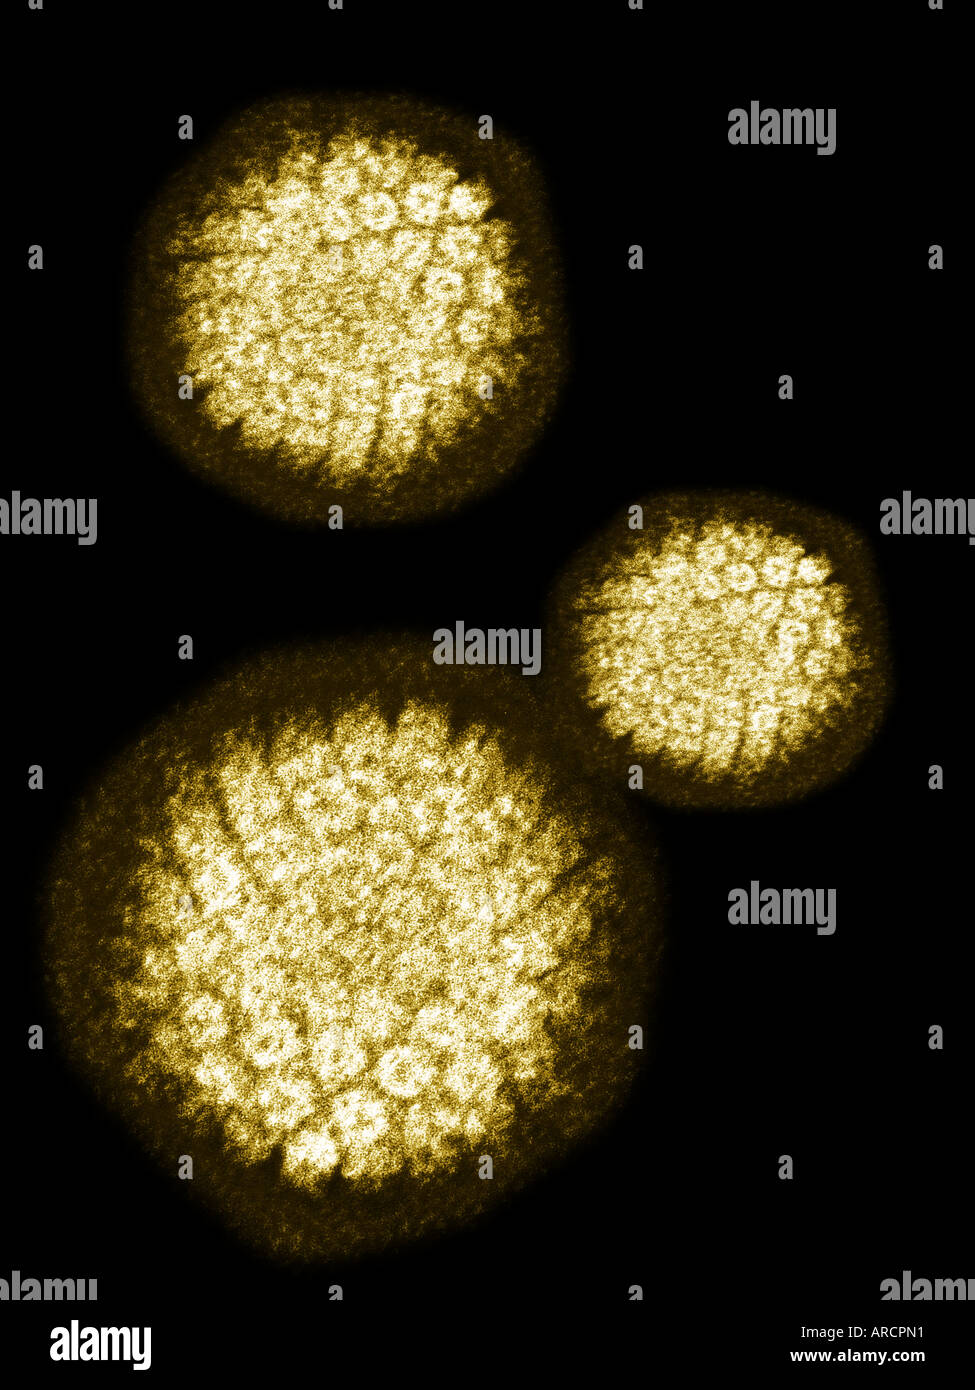 Transmissione micrografia elettronica (TEM) di un colorato negativamente il virus del papilloma umano (HBV) che provoca le verruche Foto Stock